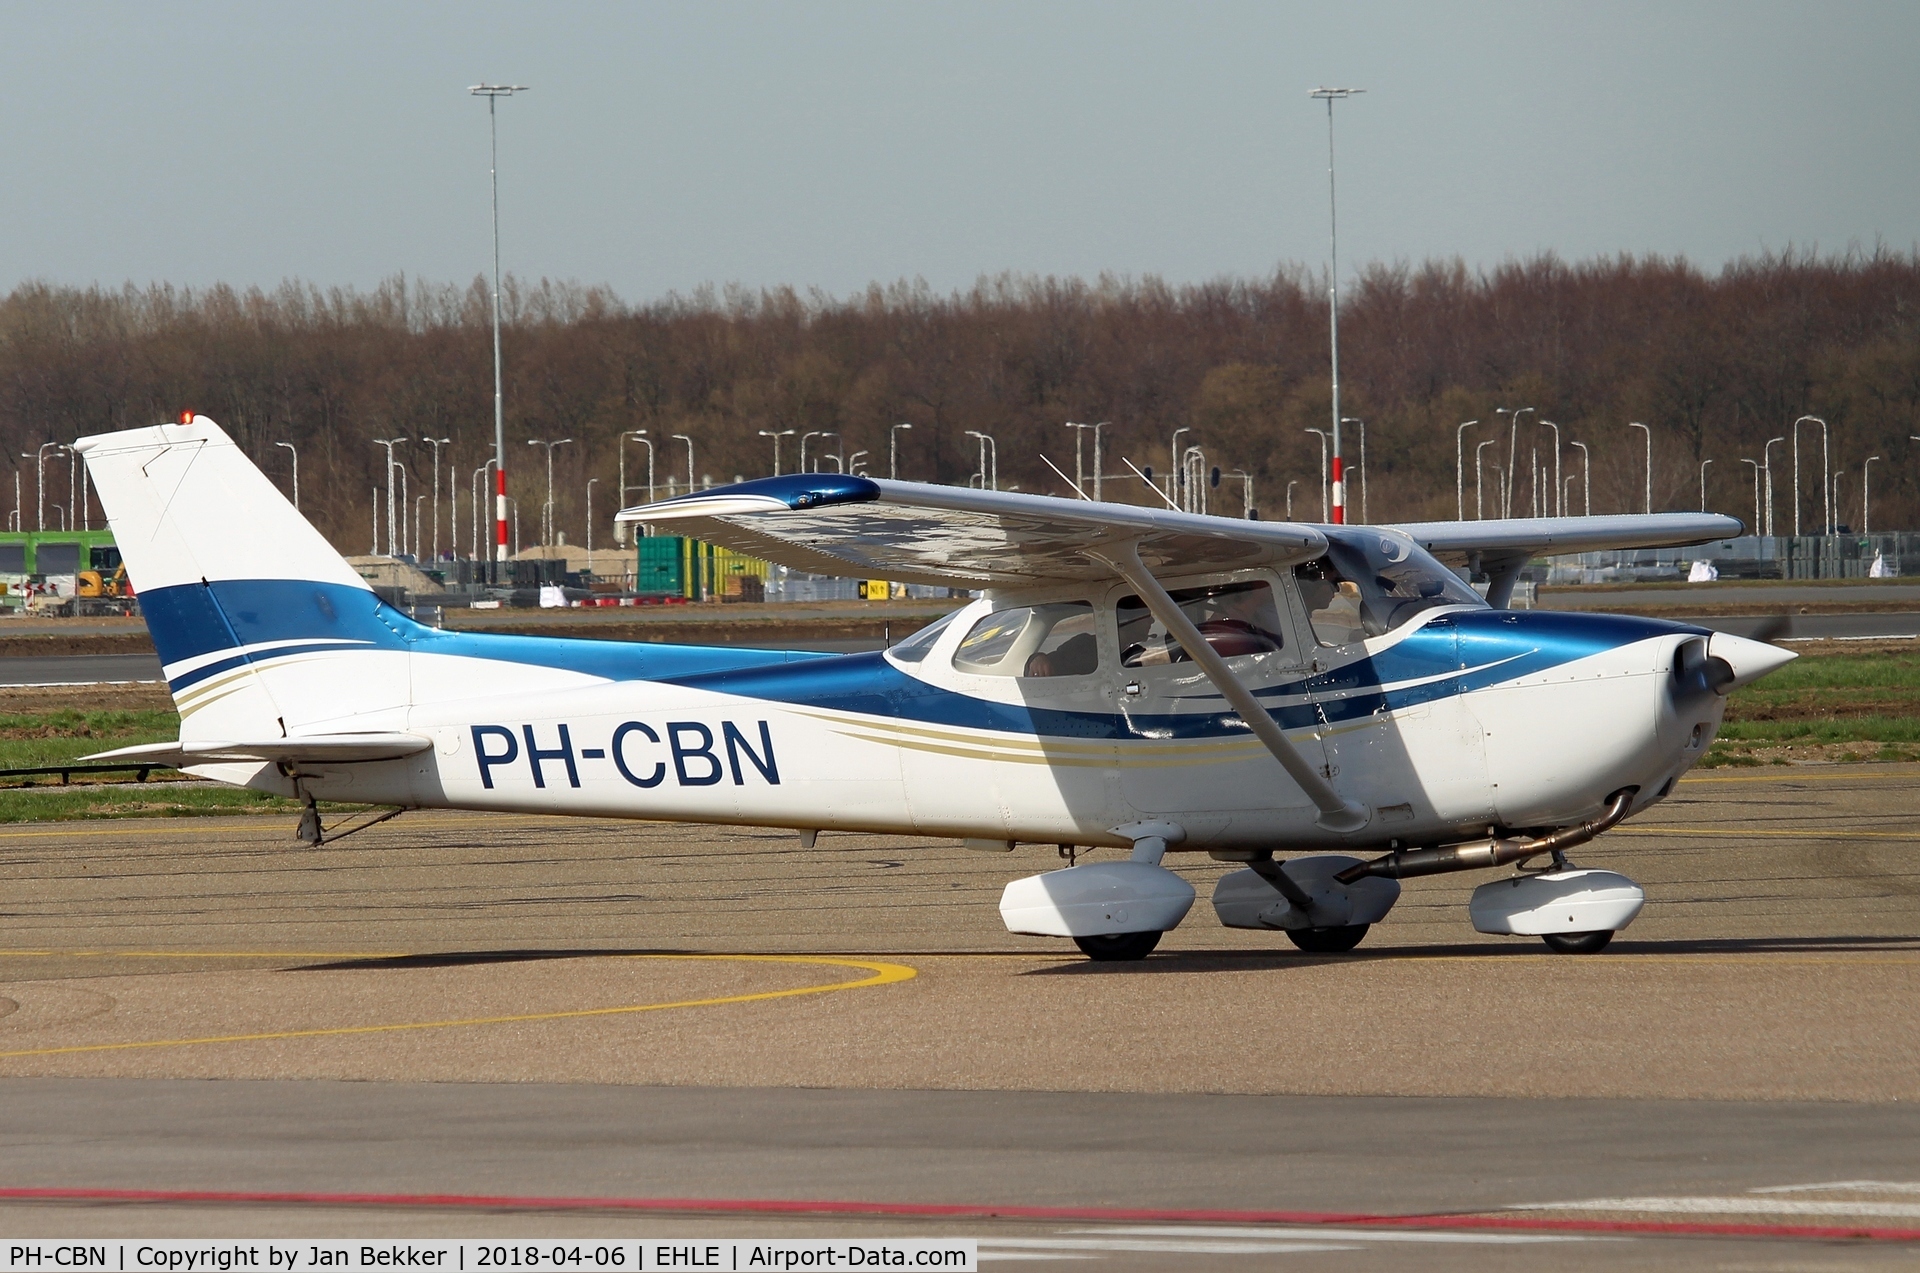 PH-CBN, 1980 Reims F172N Skyhawk C/N 1985, Lelystad Airport